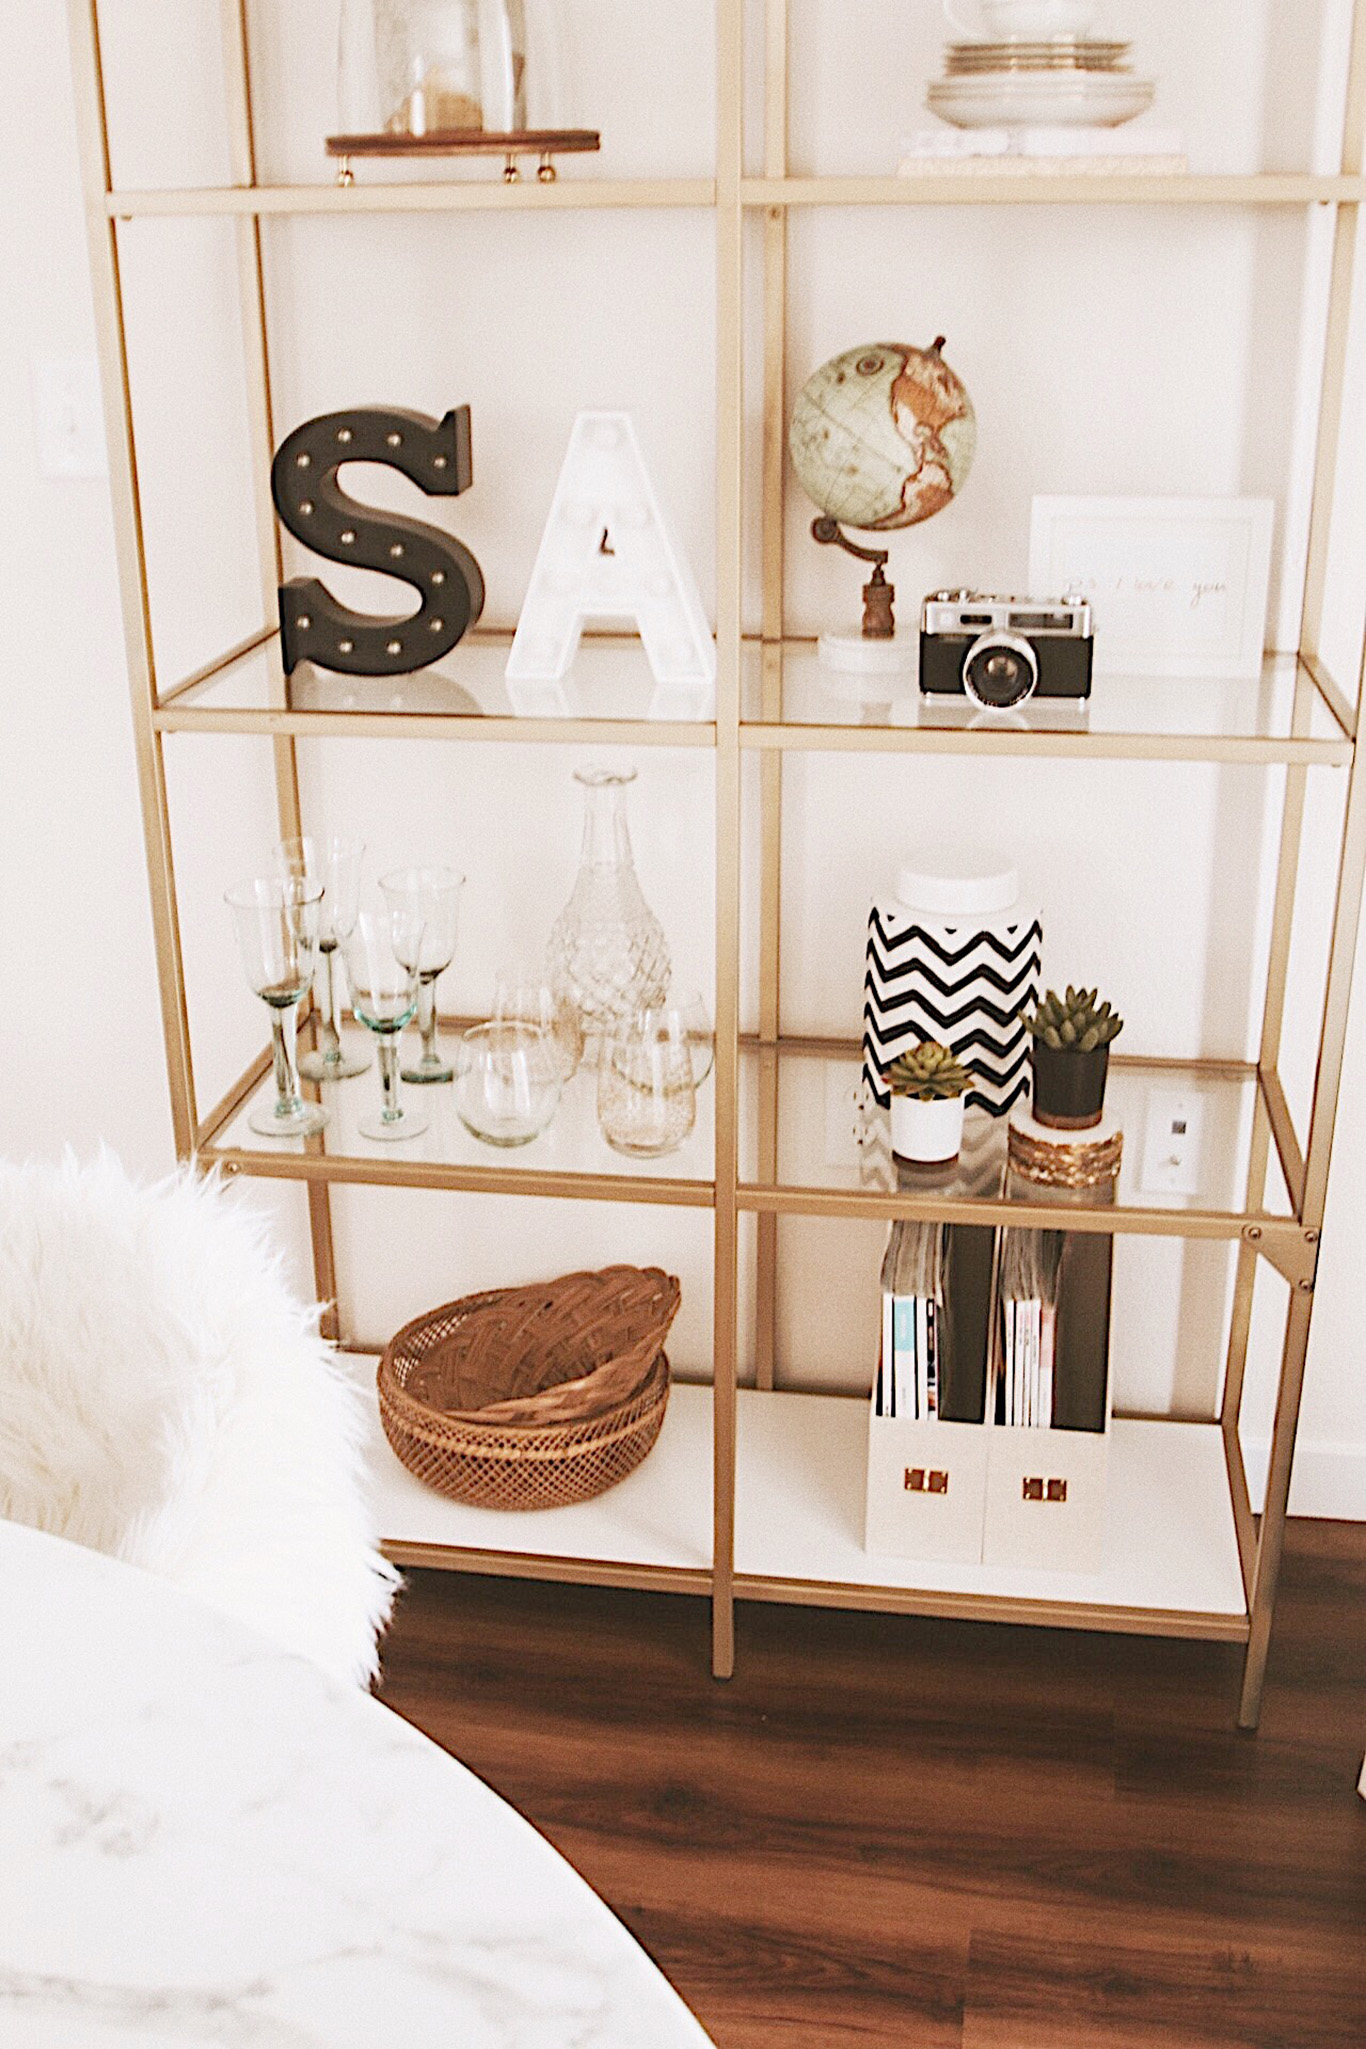 Alena Gidenko of modaprints.com shares her home decor and how she decorates a small apartment 